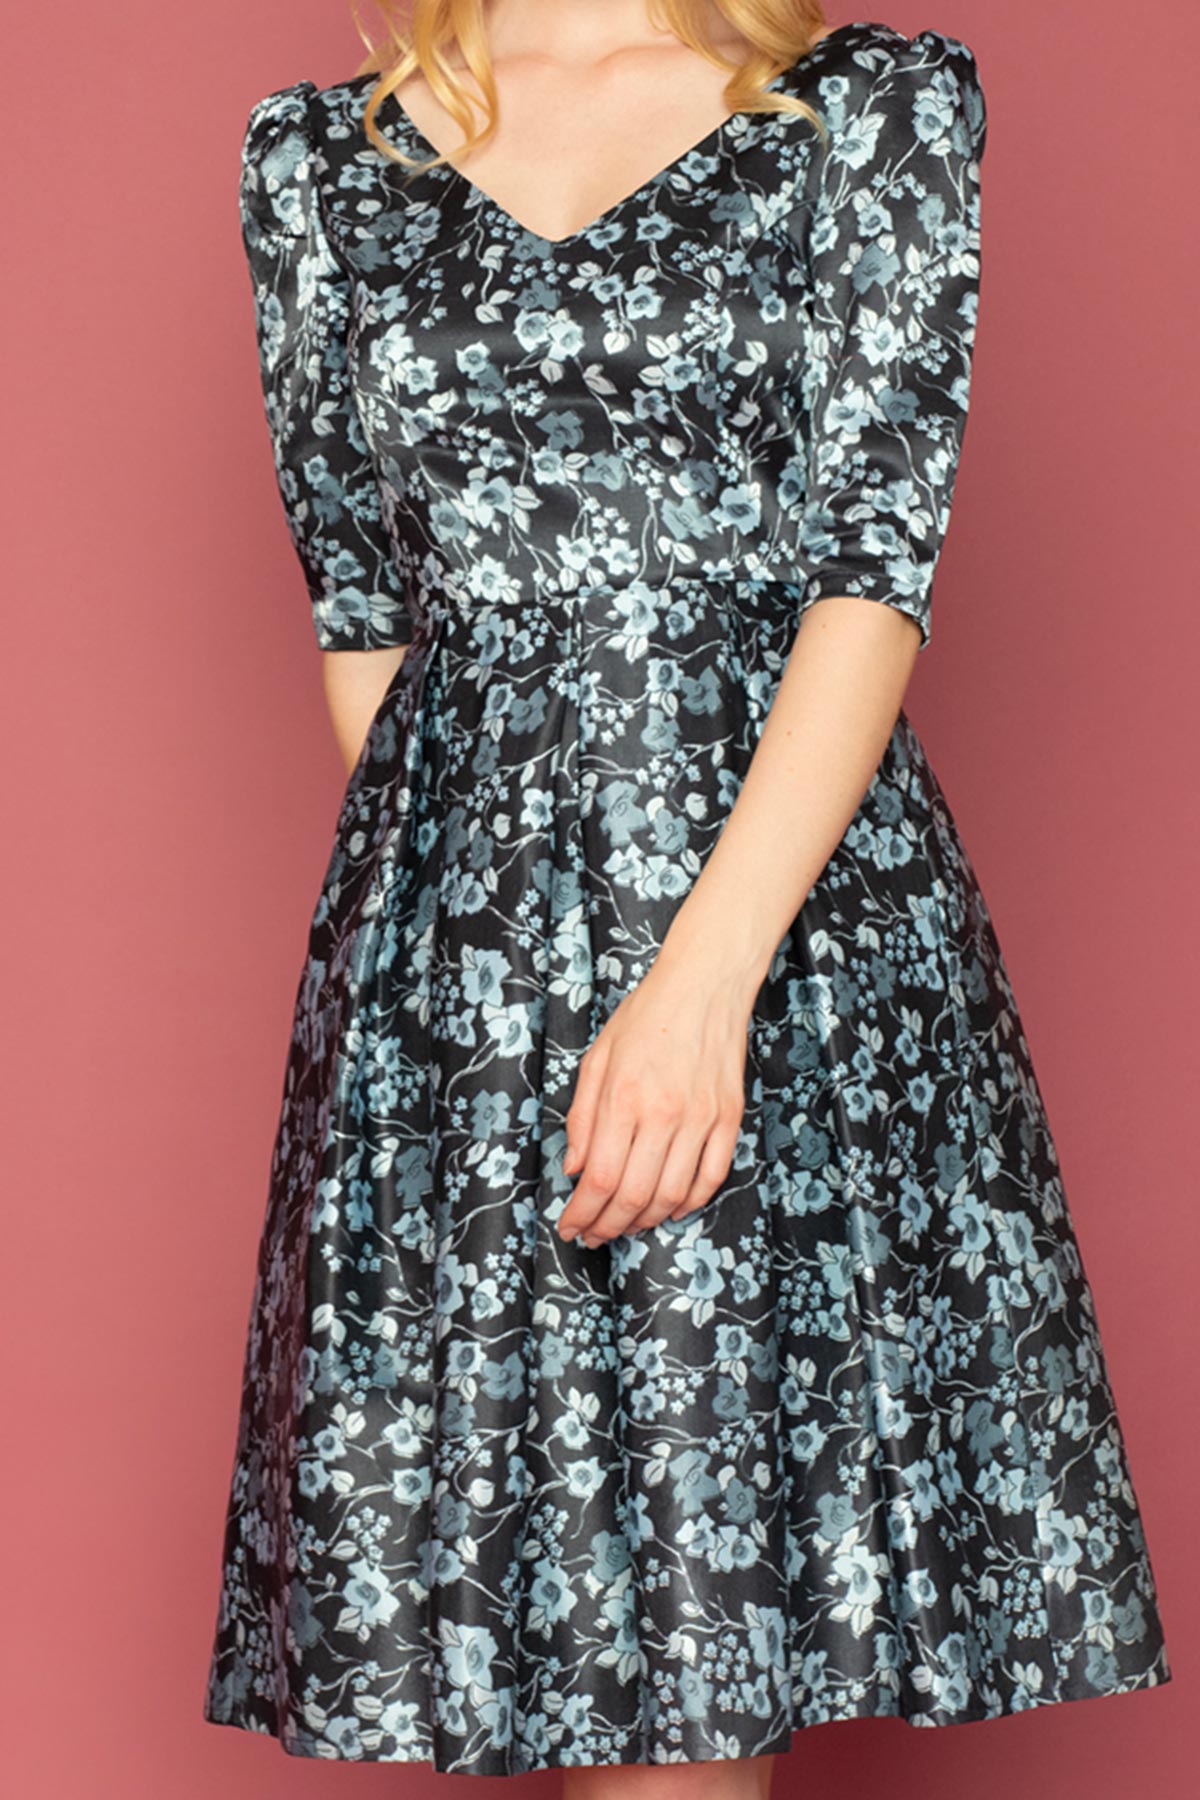 Σατινέ φλοράλ φόρεμα με λαιμουδιά και πλάτη σε σχήμα V, με 3/4 μανίκια, σε μεσάτη γραμμή, με κουφόπιετες στη φούστα και τσέπες, ιδανικό για μια επίσημη περίσταση.